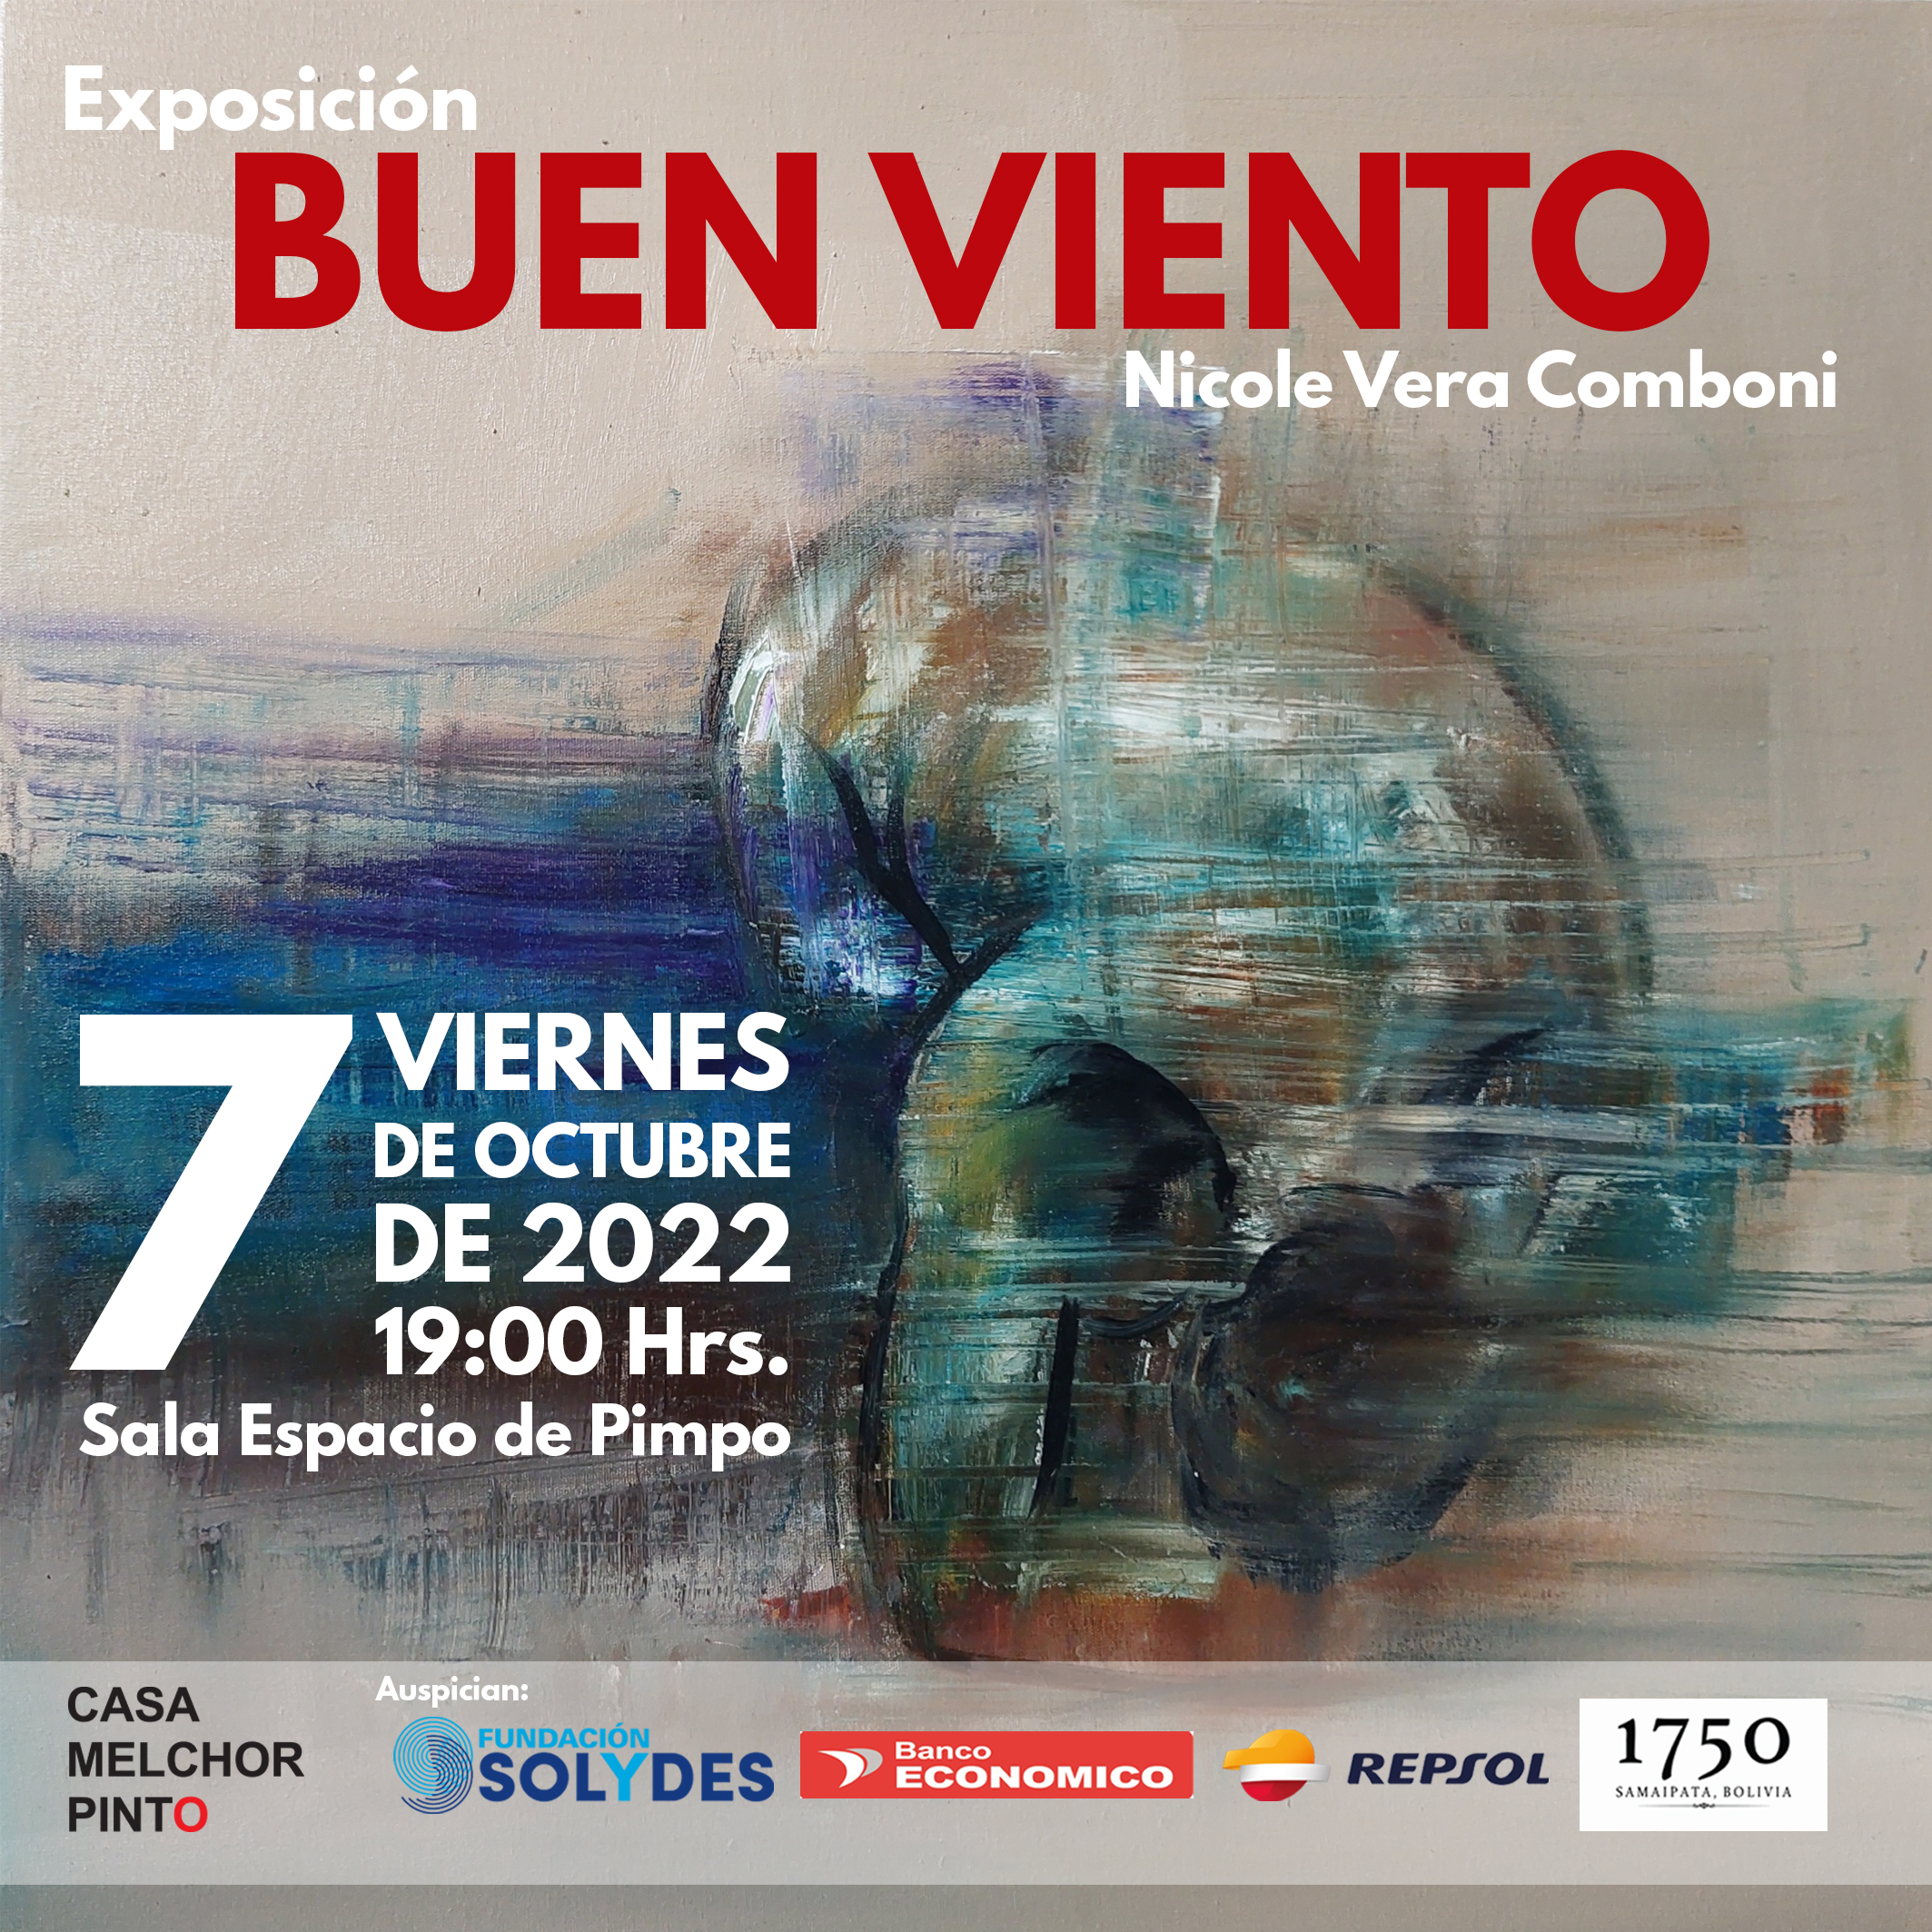 Expo Buen Viento 7 oct 2022